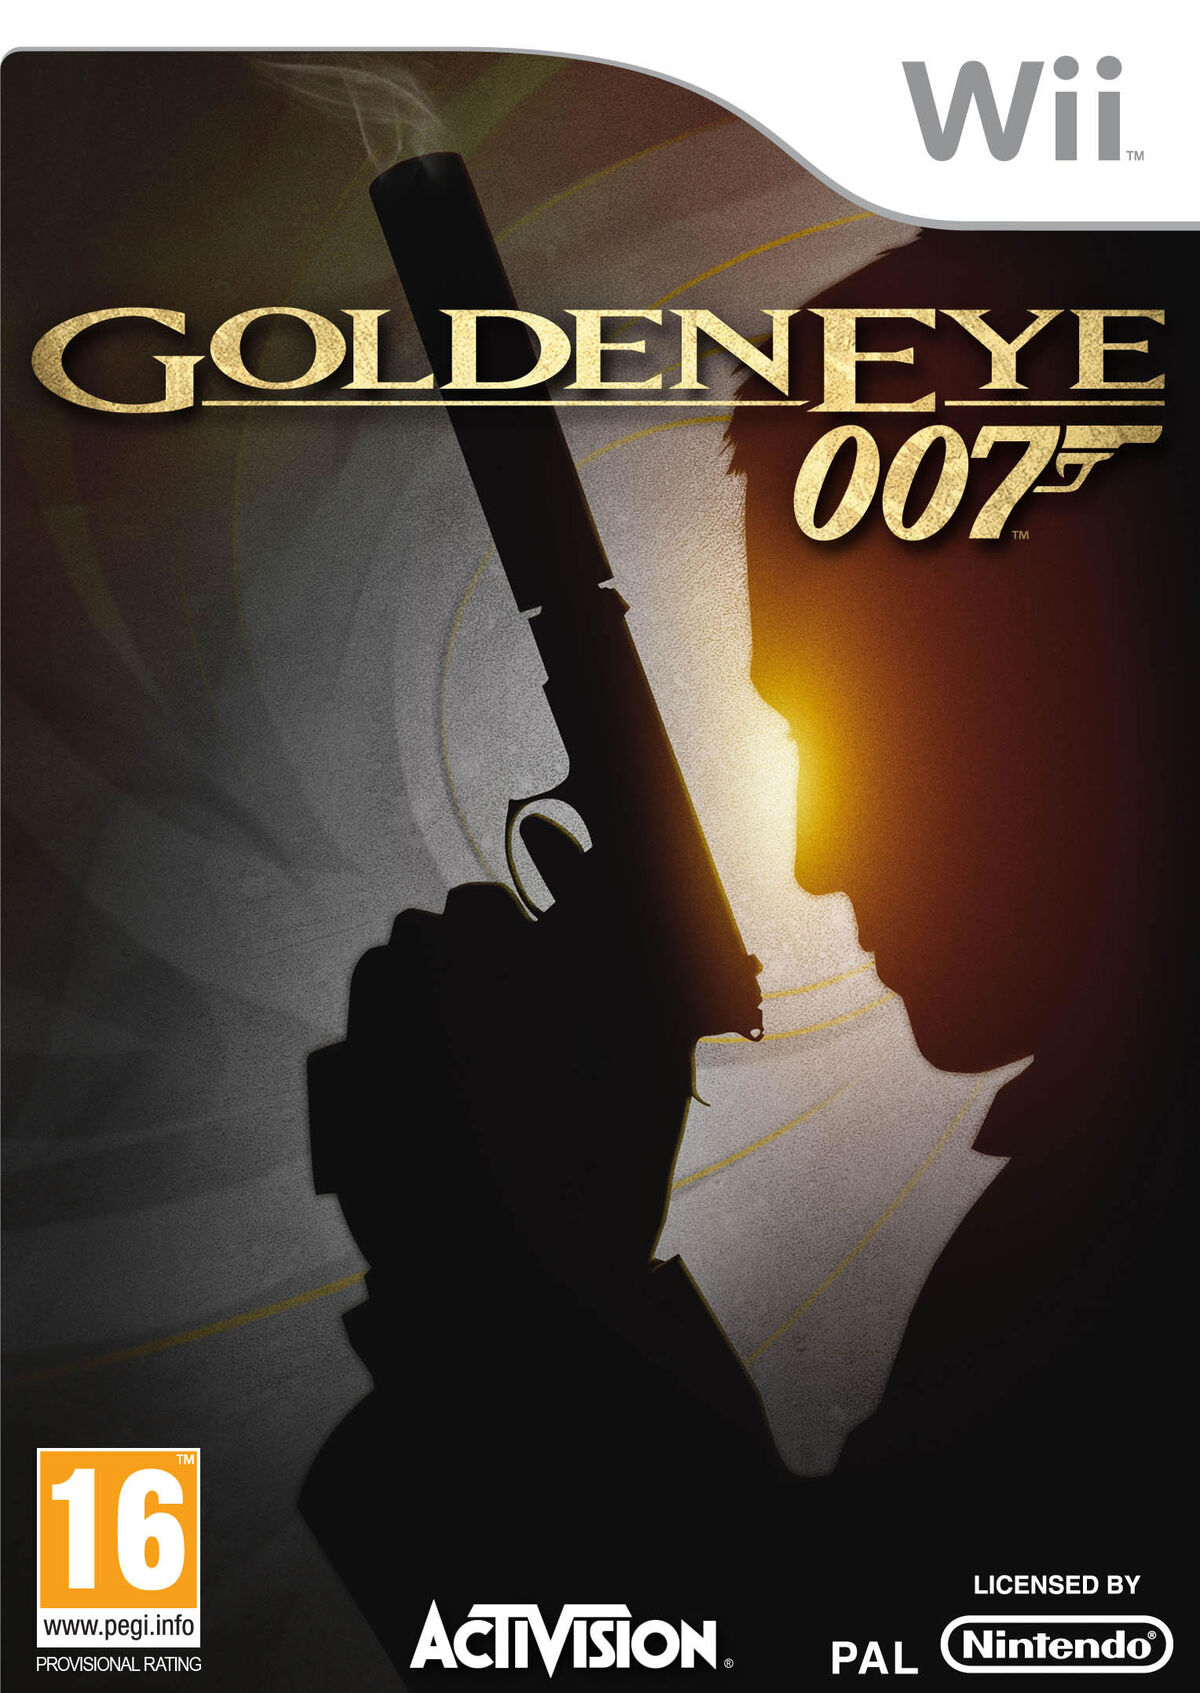 GoldenEye 007 [Europe] - Nintendo 64 (N64) rom download